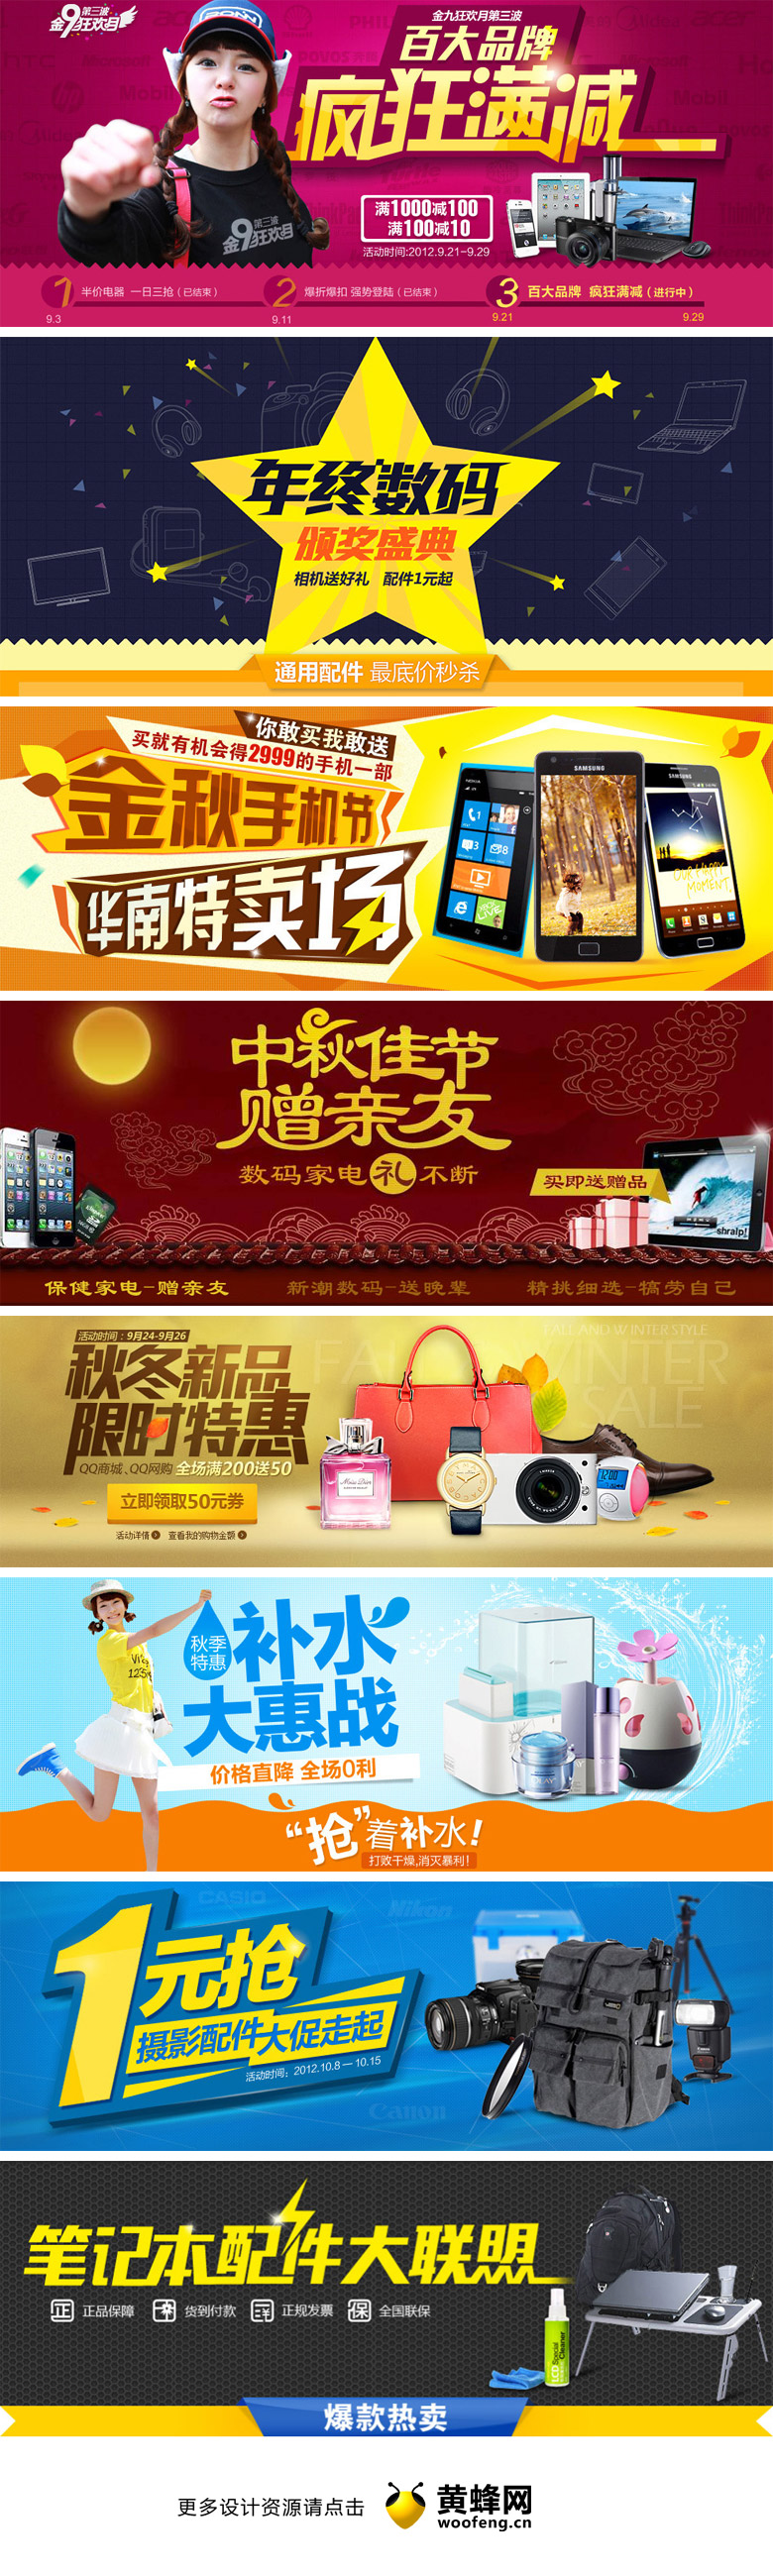 易讯购物网站专题页面头图设计欣赏0409，来源自黄蜂网https://woofeng.cn/advertising/